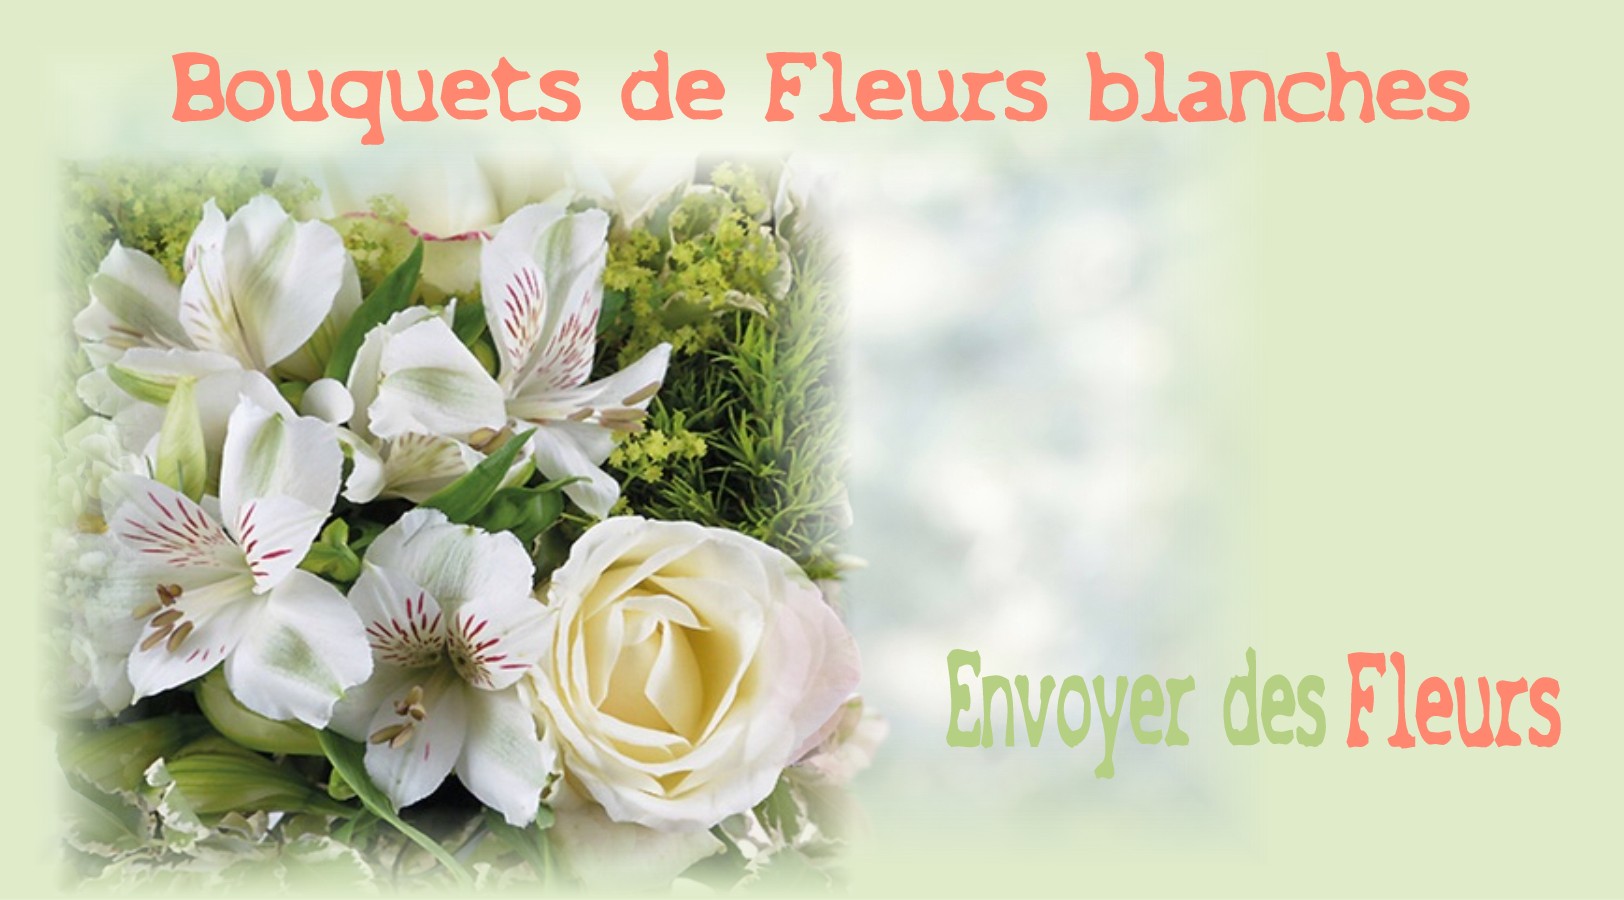 BOUQUETS DE FLEURS BLANCHES -FLEURISTE TOULOUSE (31) - ENVOYER DES FLEURS